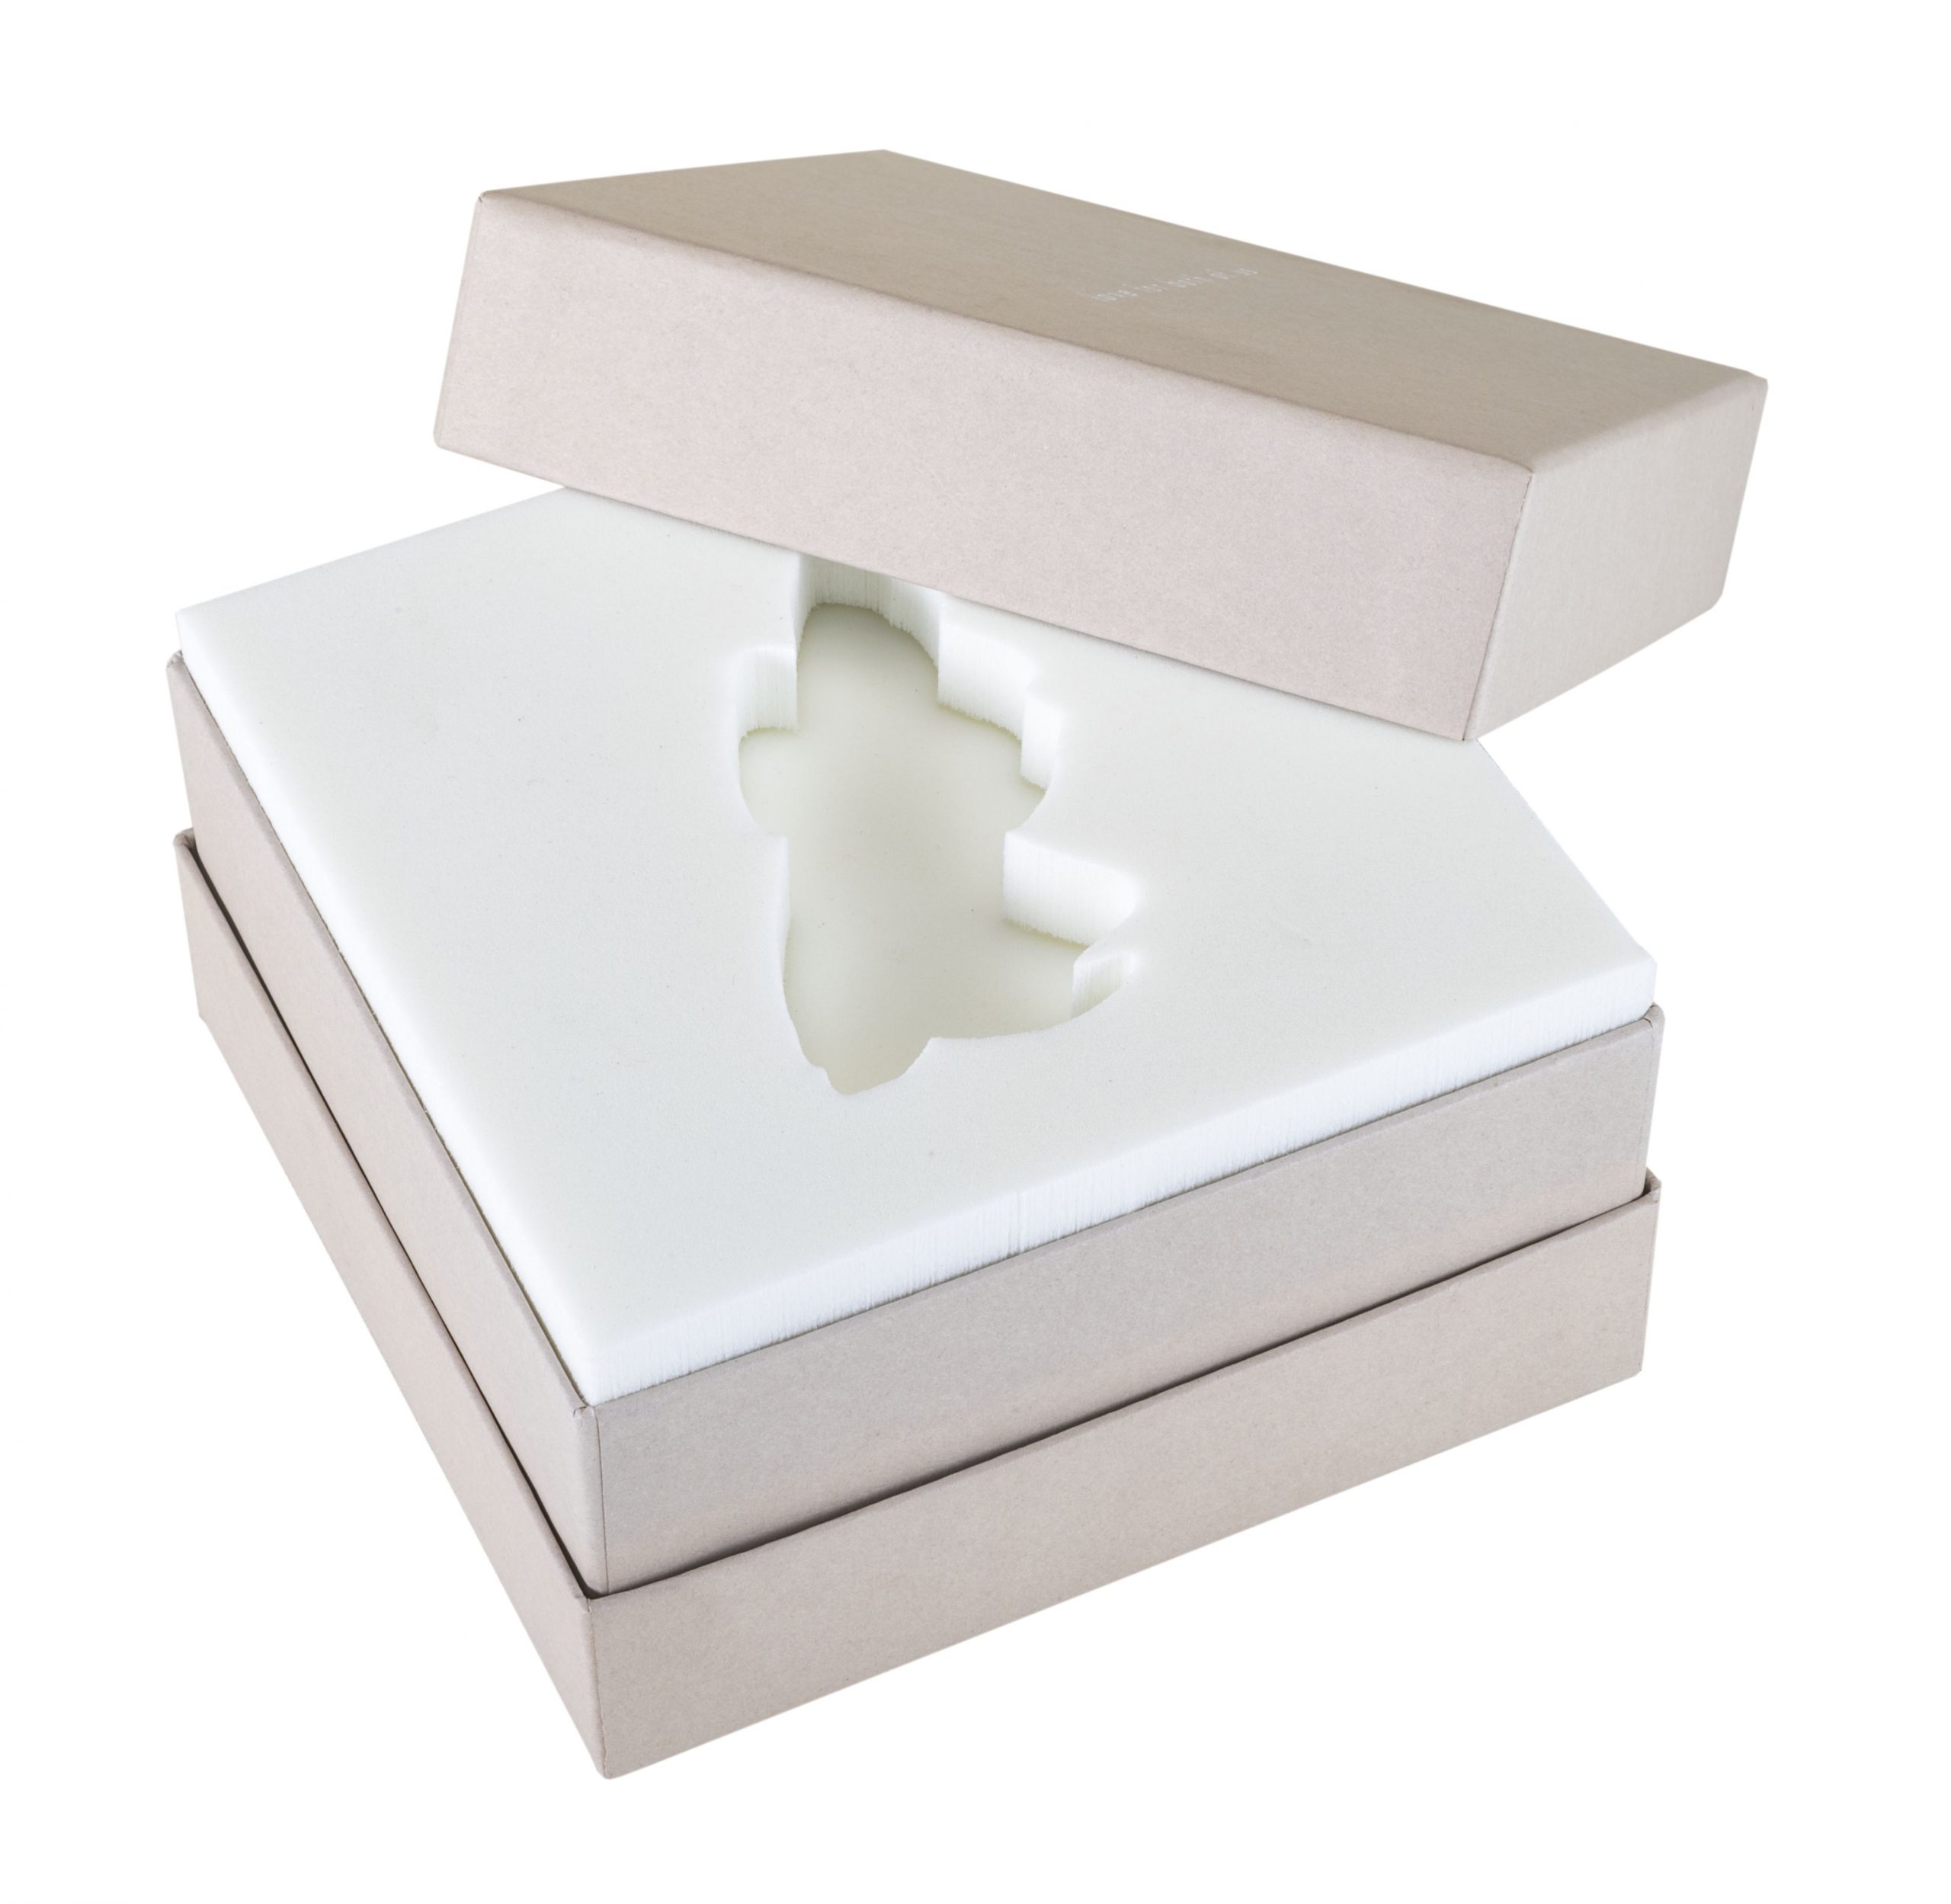 Foam Packaging Inserts - Custom Package Foam Inserts